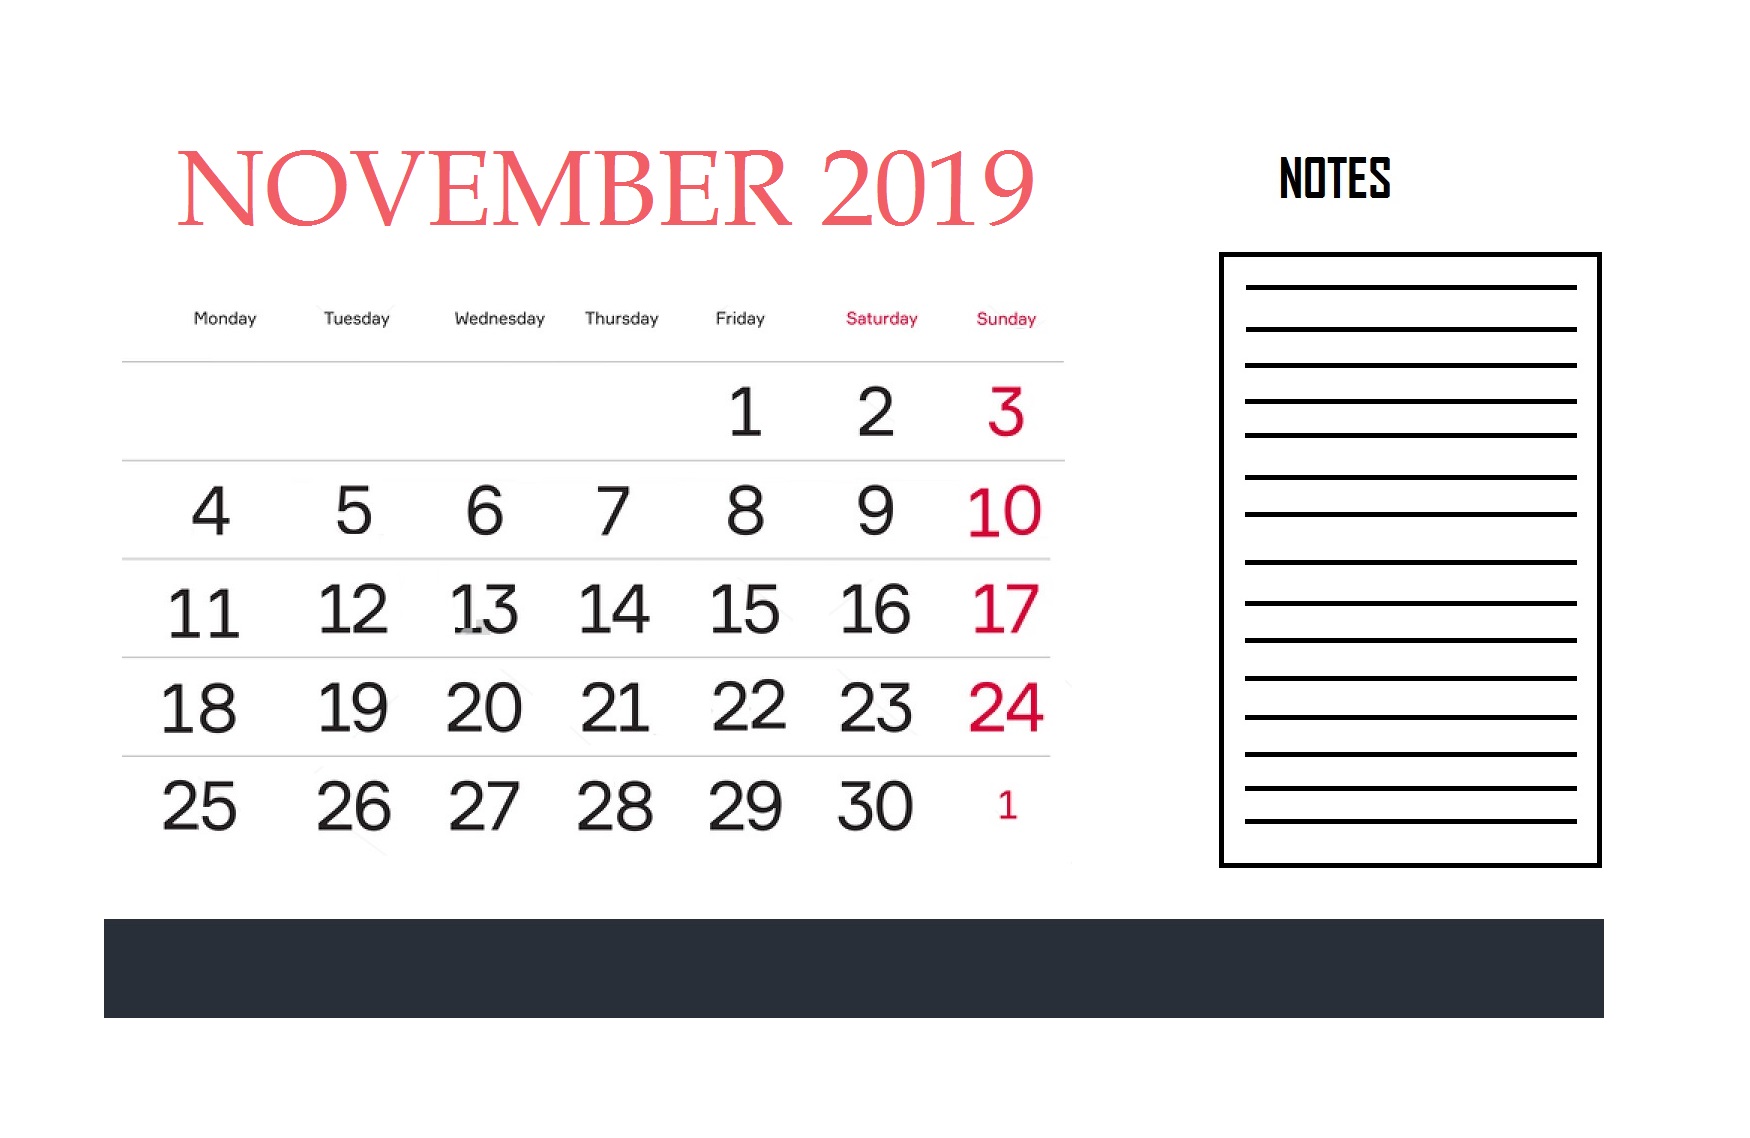 November 2019 Calendar For Office Wall